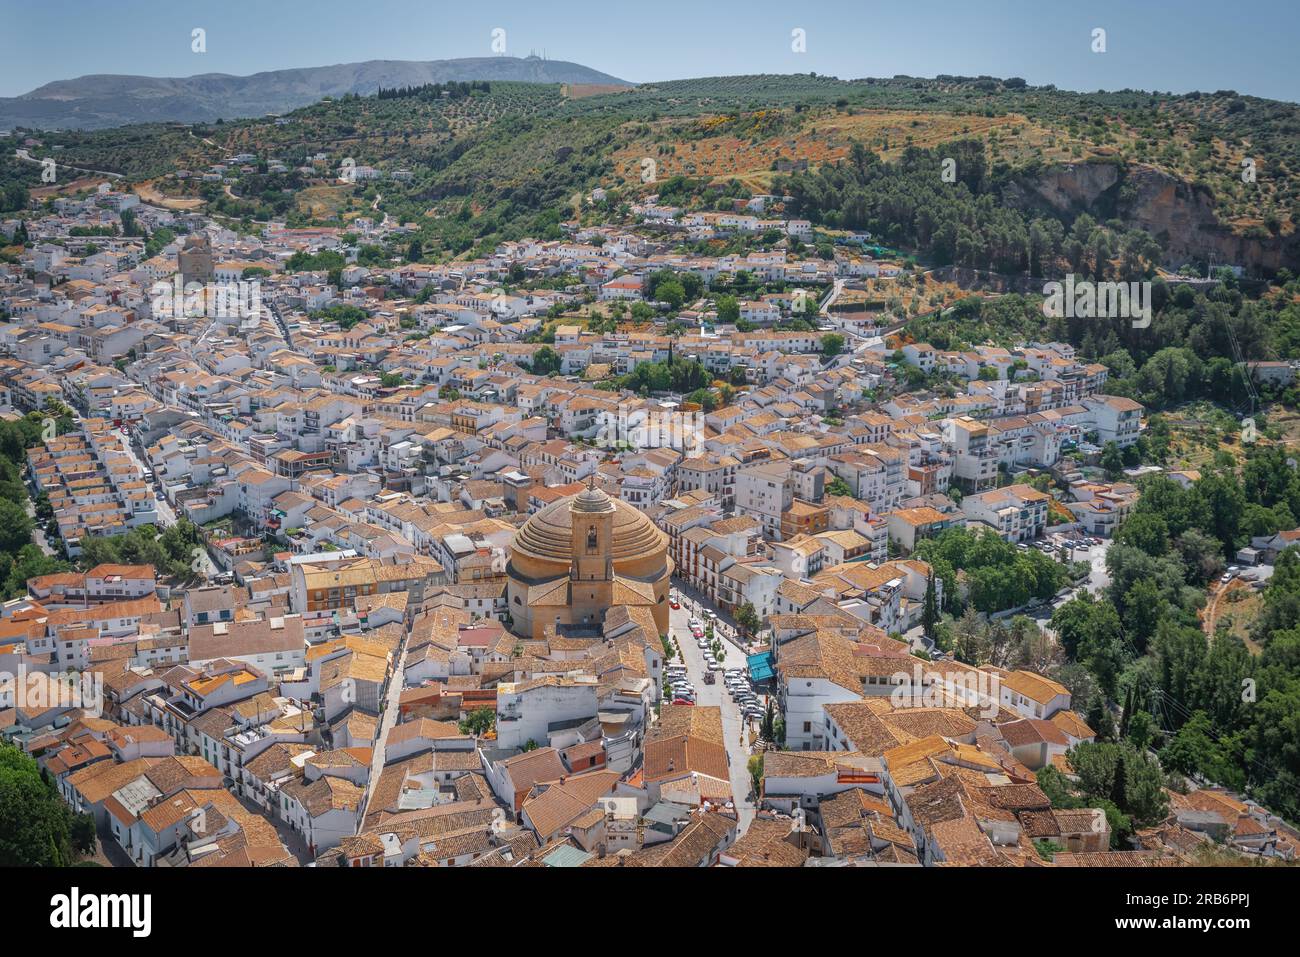 Vista aerea di Montefrio con la chiesa de la Encarnacion - Montefrio, Andalusia, Spagna Foto Stock